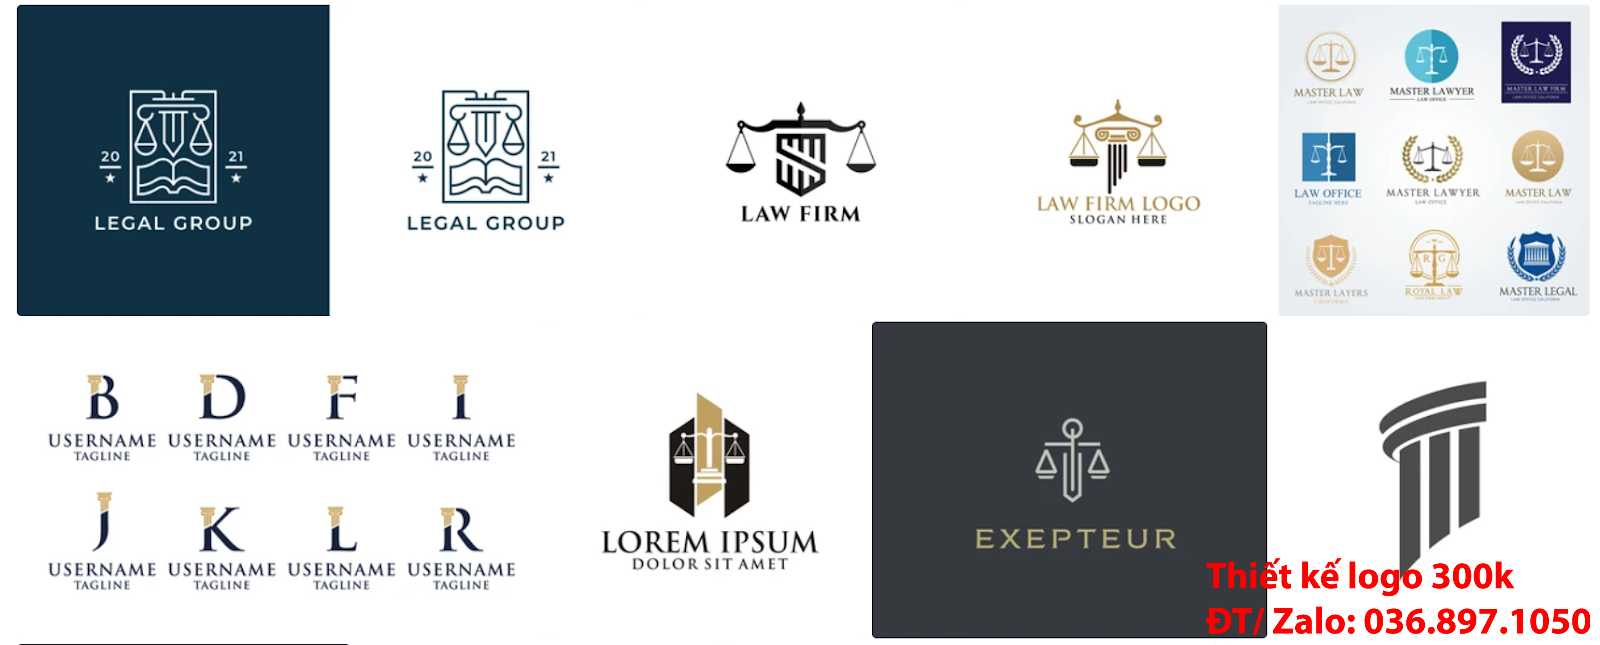 Mẫu logo công ty luật sư đẹp online chuyên nghiệp chất lượng 500k